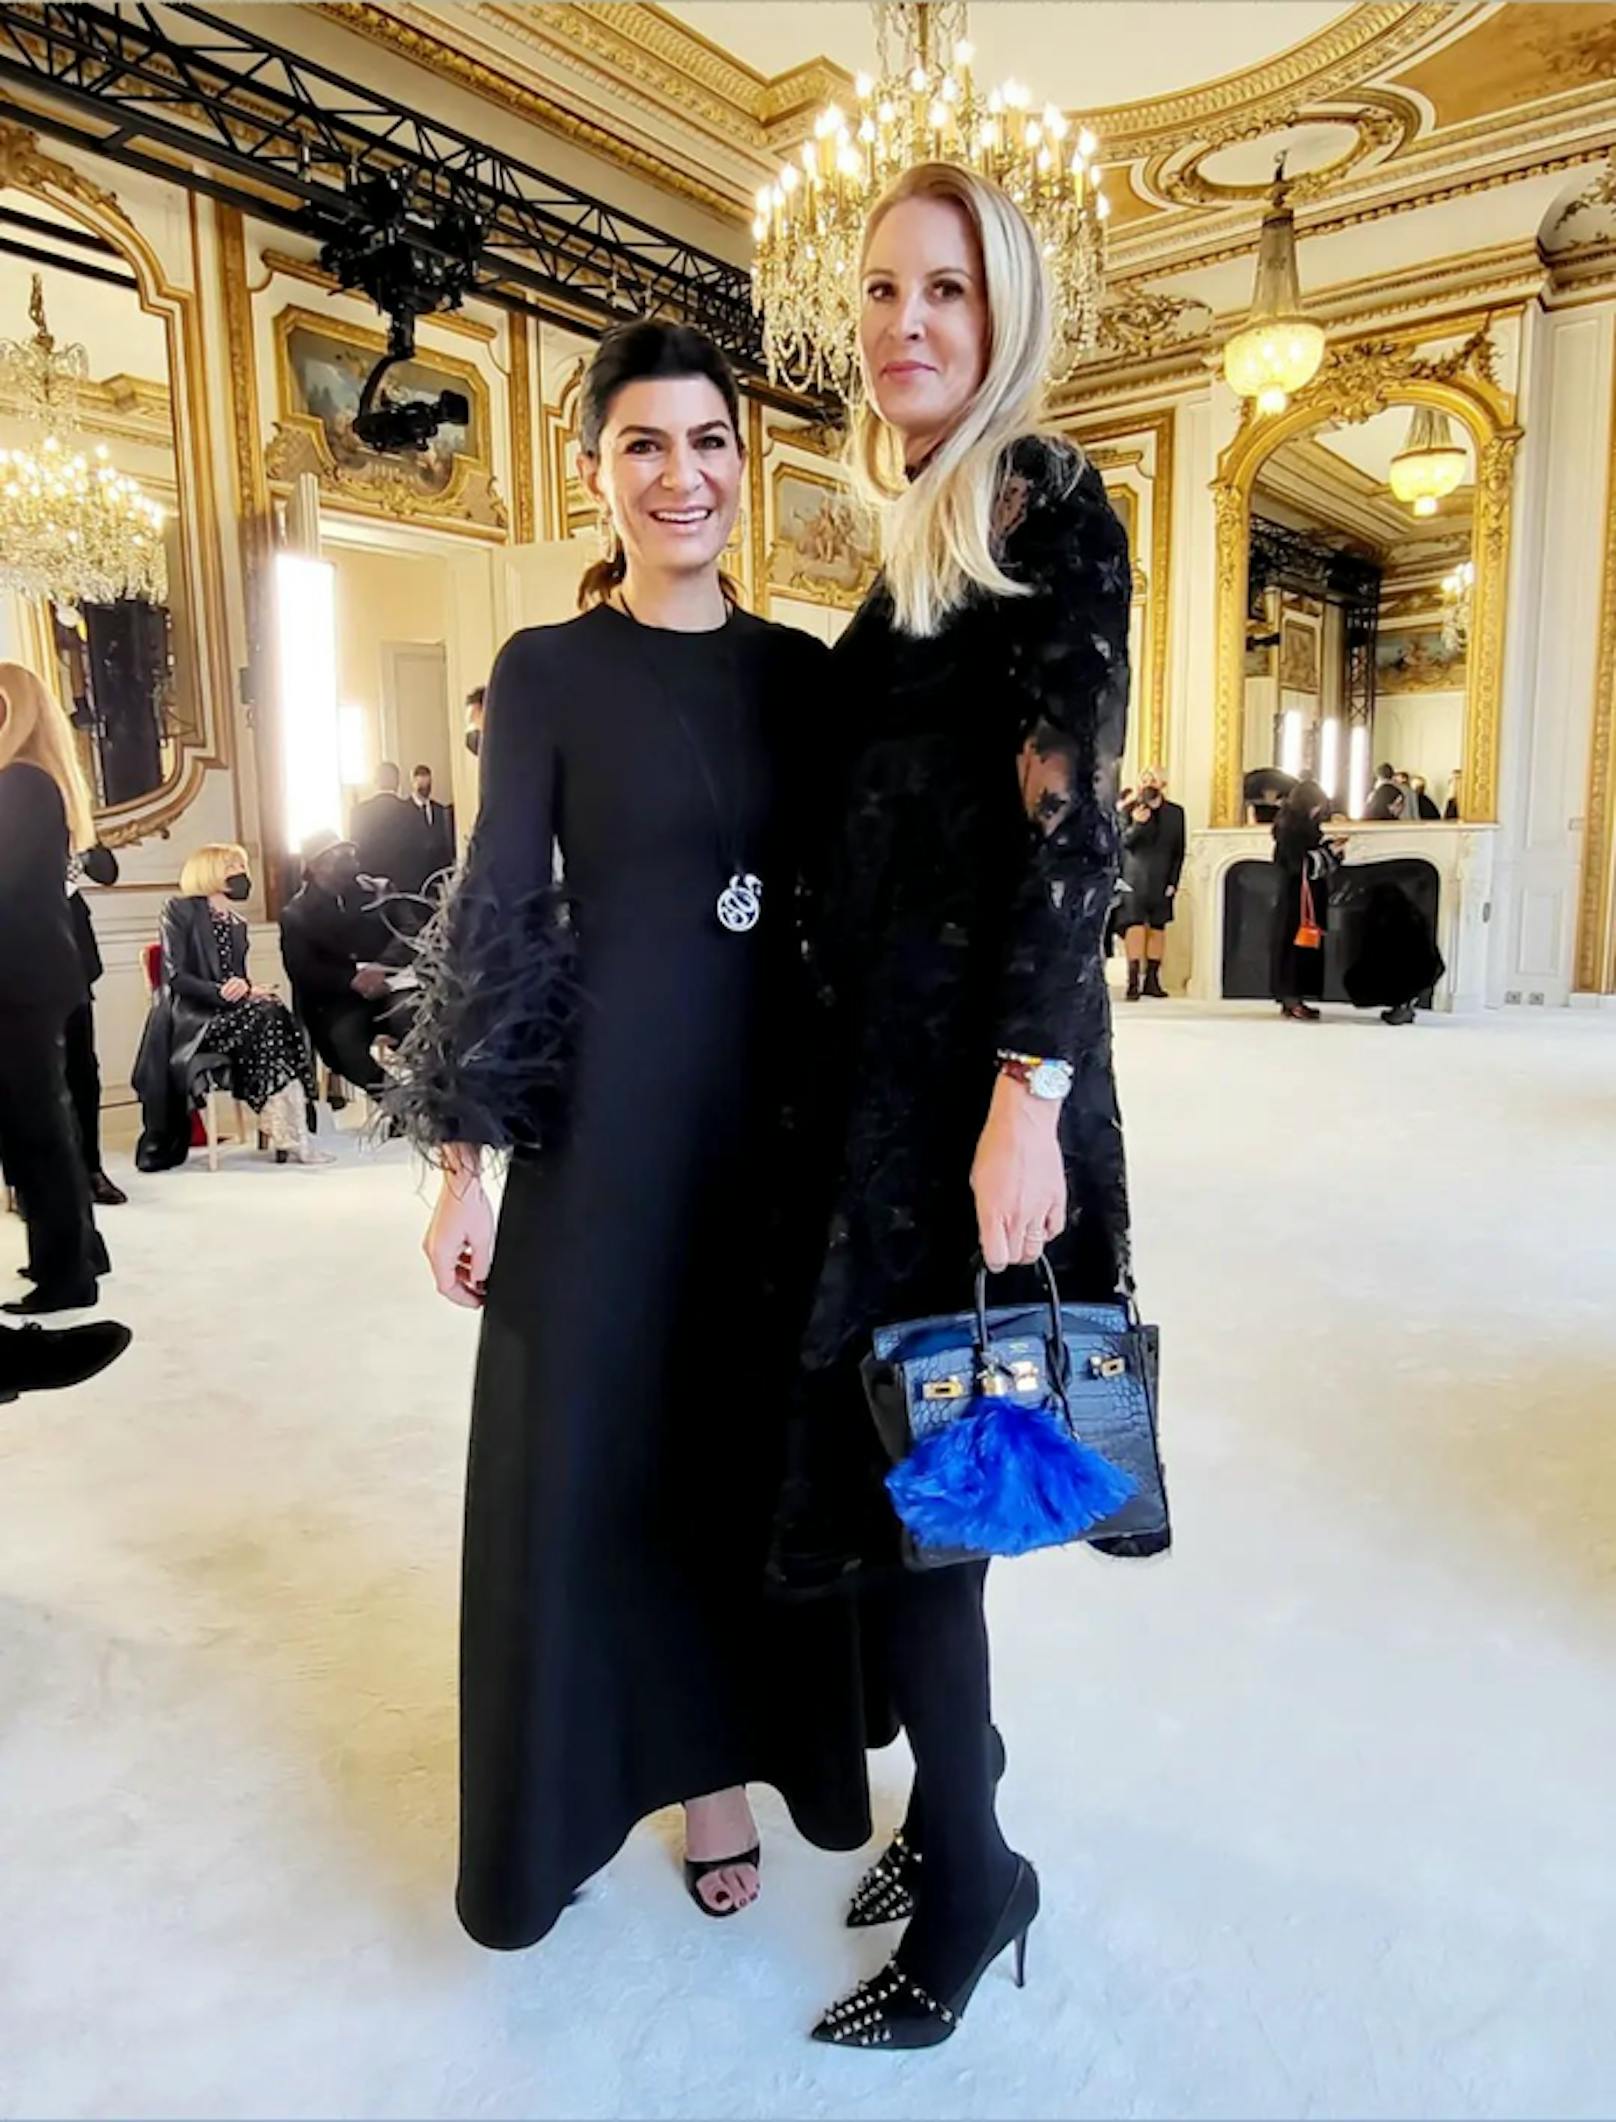 "Heute"-Herausgeberin Eva Dichand besuchte die Show von Valentino gemeinsam mit dere Wiener Influencerin Sylvie Utudjian (<a href="https://www.instagram.com/uberchique/?hl=de">uberchique.com</a>).